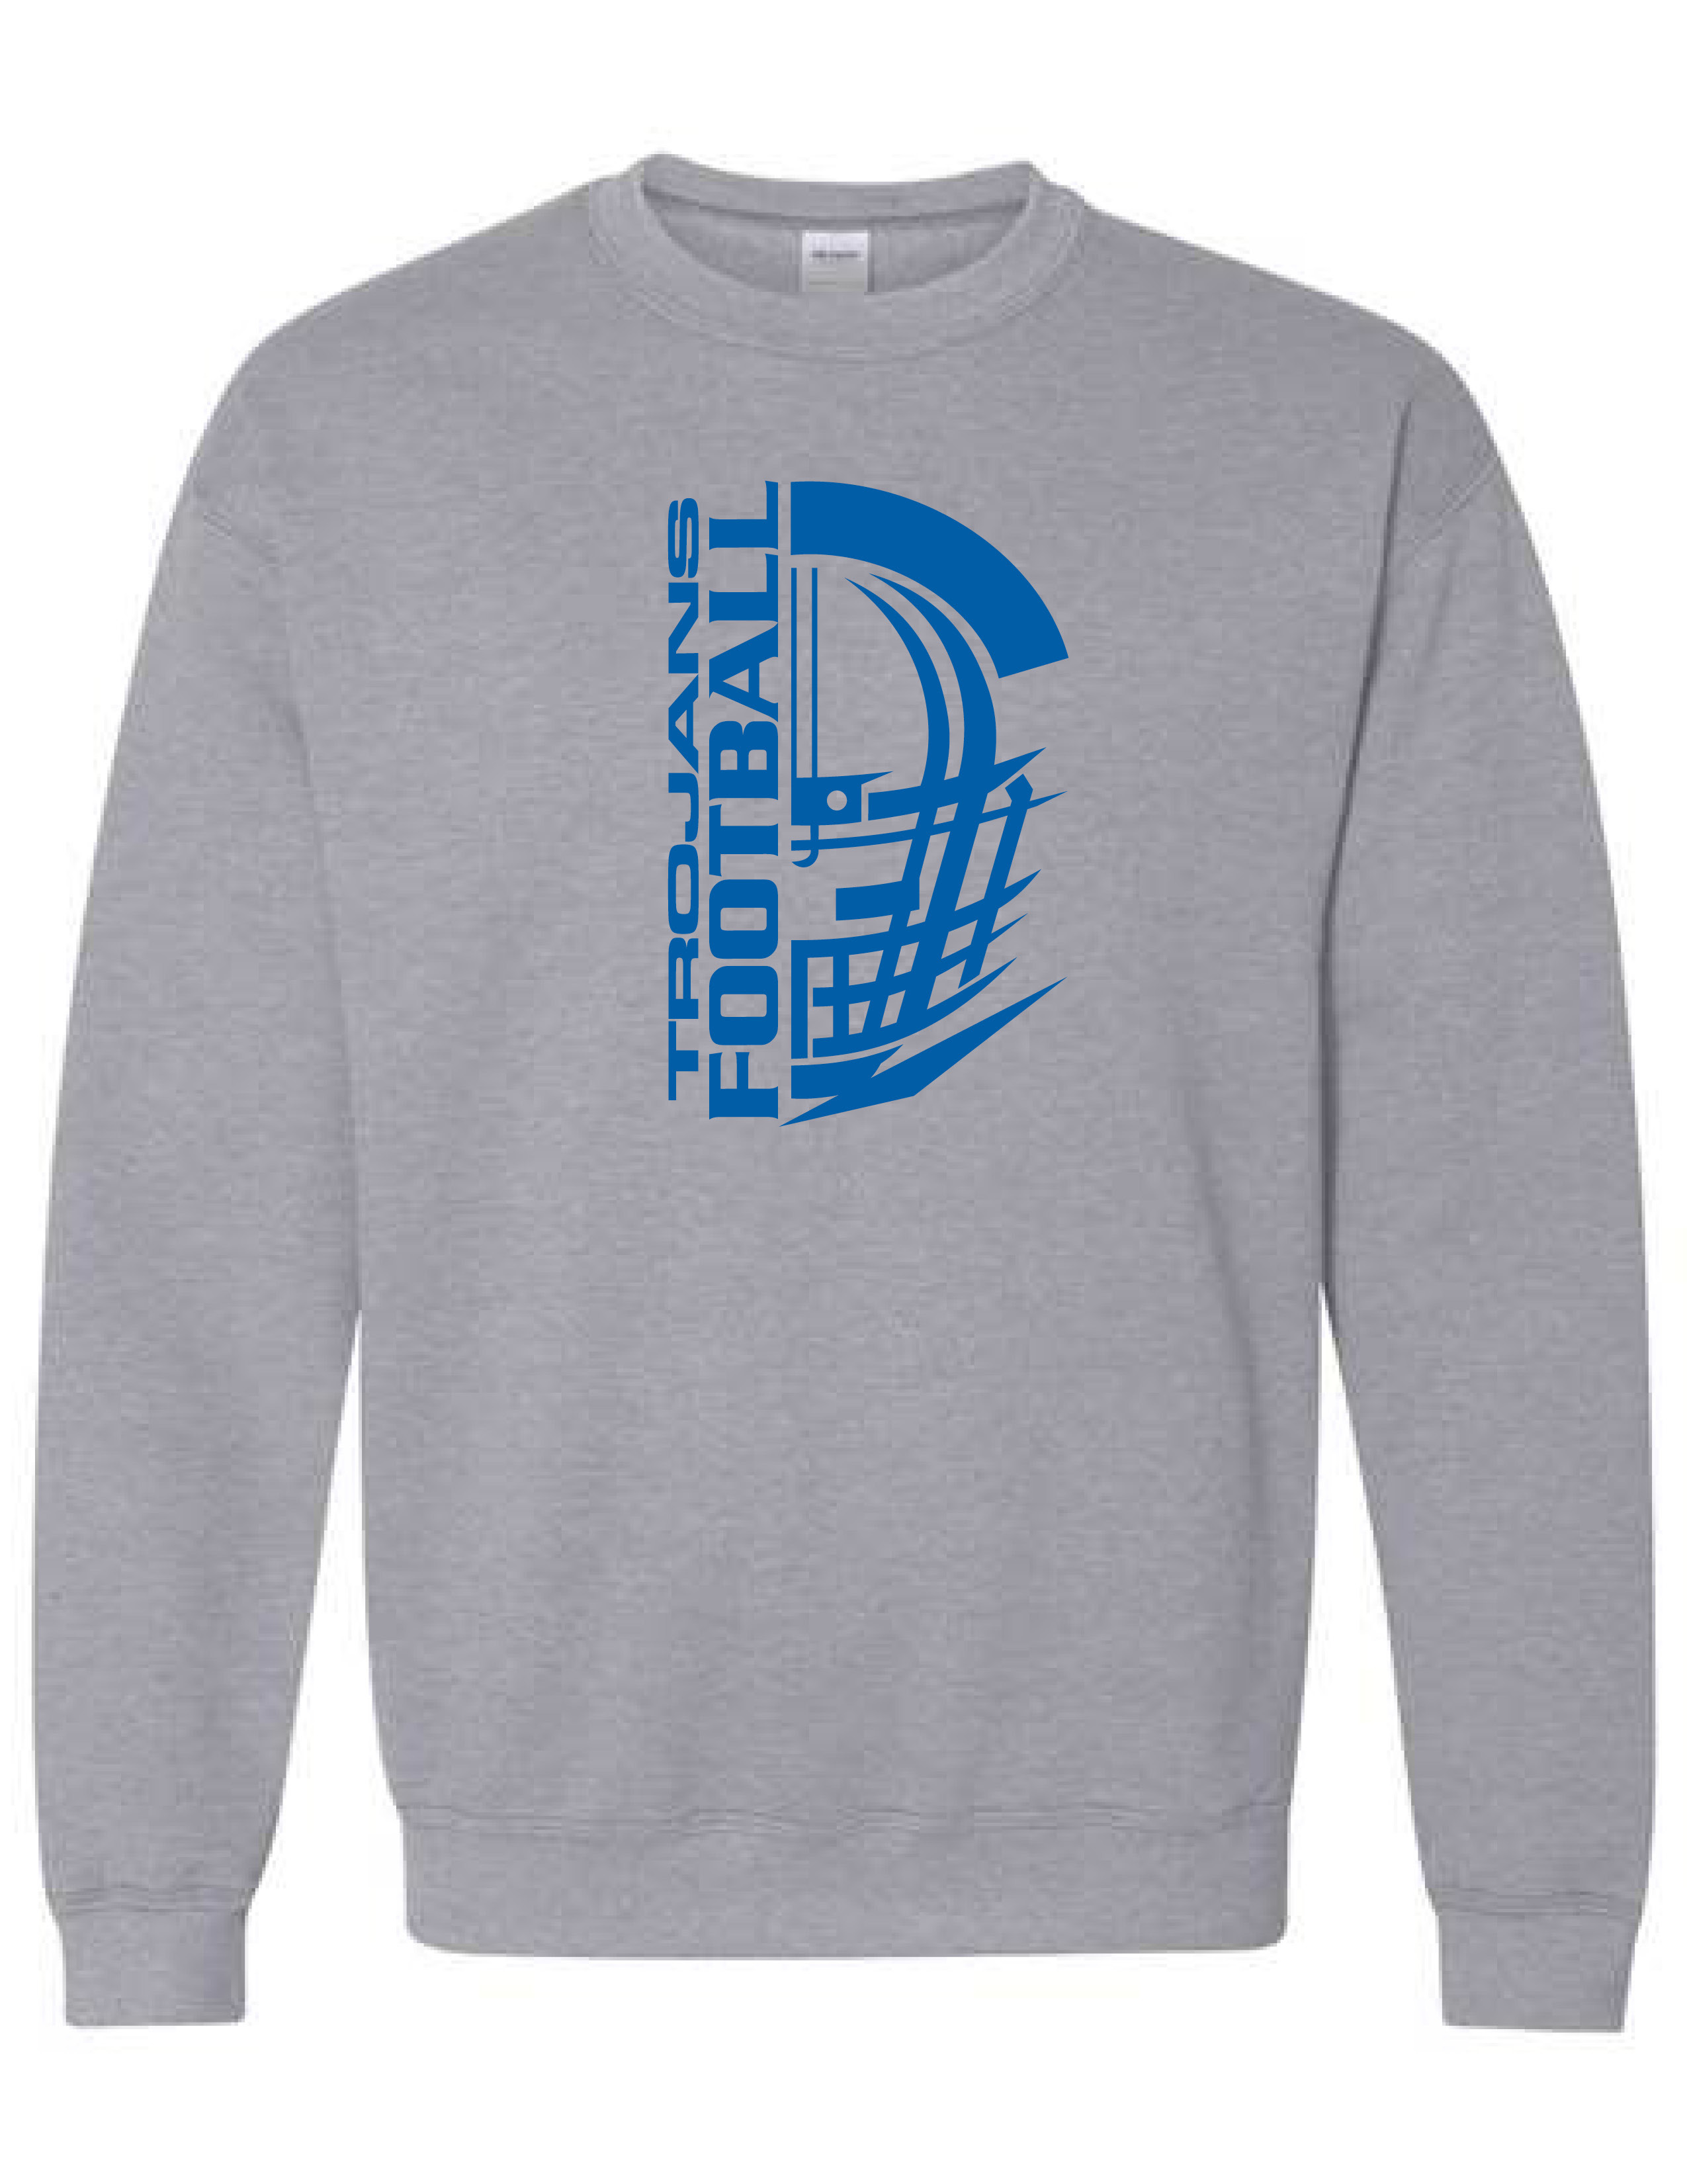 Crew Neck Sweatshirt  (HELMET) (Youth sizes available)